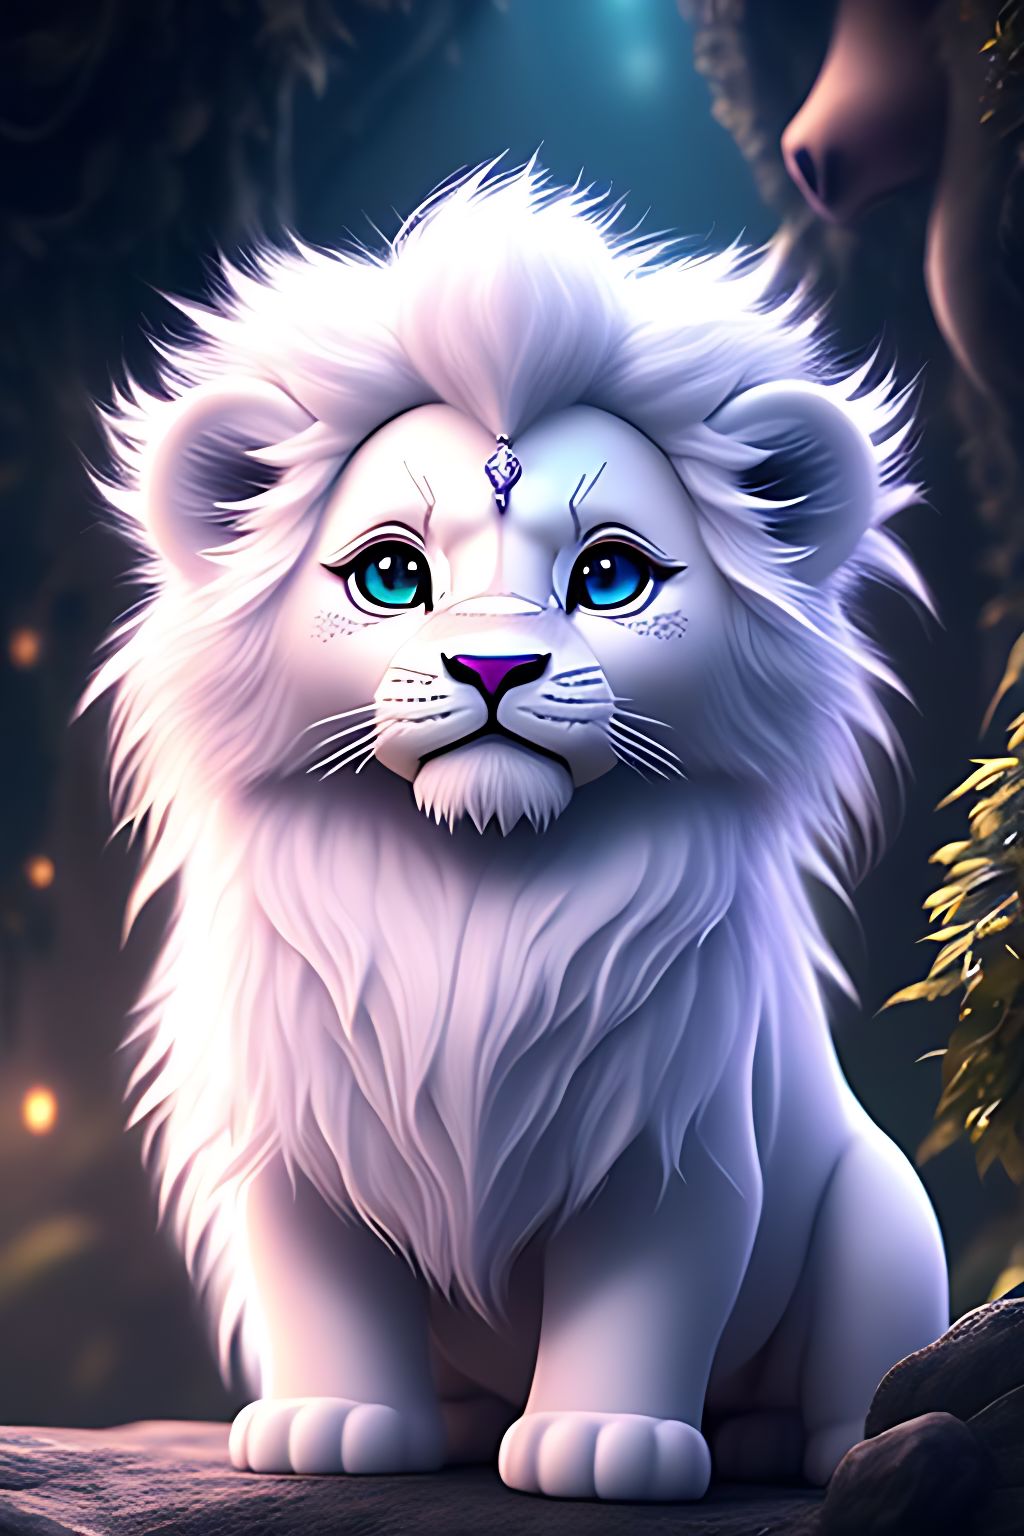 Với Adorable Kawaii Lion Art đầy màu sắc và ngộ nghĩnh này, bạn sẽ thực sự cảm thấy hạnh phúc và thỏa mãn khi được thưởng thức. Hãy cùng khám phá thế giới đầy phép màu của con sư tử Kawaii và tìm hiểu cách làm sao để vẽ được những bức tranh đầy sức sống như vậy. Chắc chắn sẽ là trải nghiệm thú vị không thể bỏ qua!